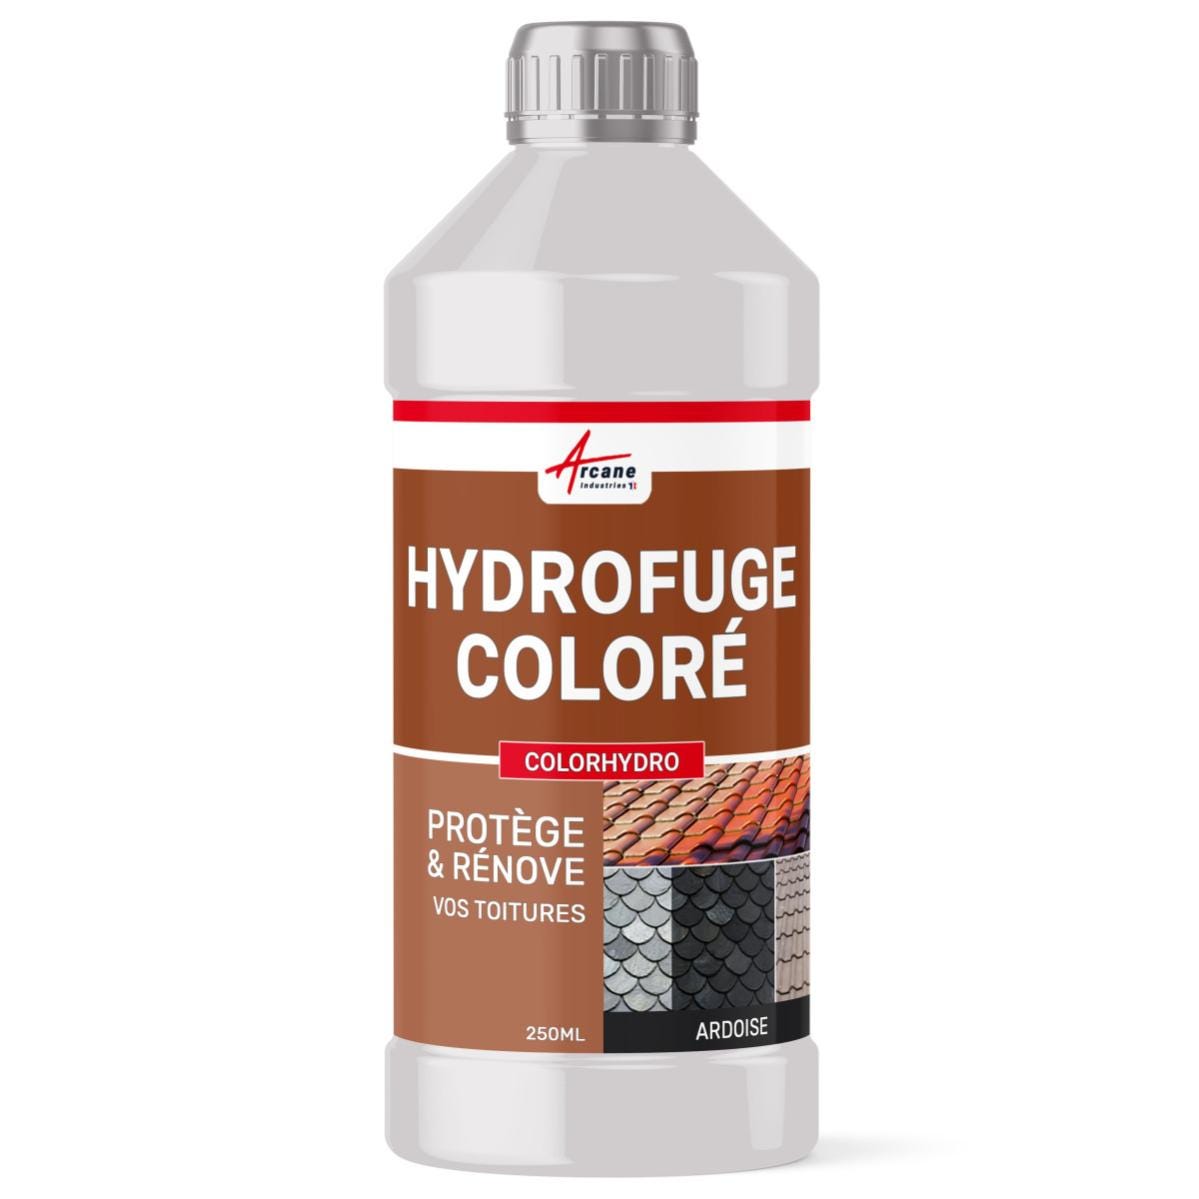 Hydrofuge Coloré Tuile et Toiture - COLORHYDRO - 250 ml - Testeur - Ardoise - RAL 9004 - ARCANE INDUSTRIES 5